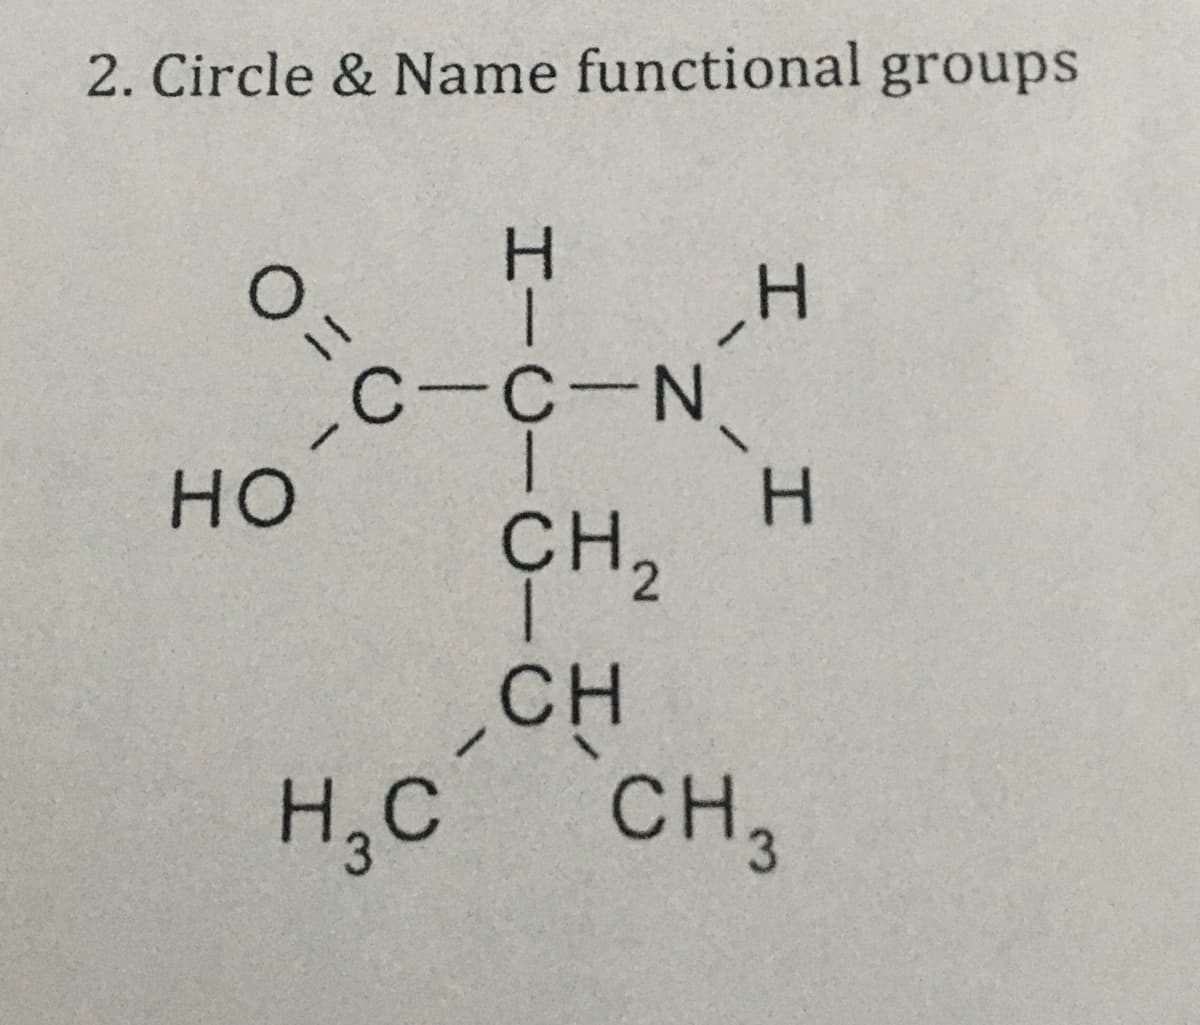 2. Circle & Name functional groups
Os-C-N
H.
C-C-N.
H.
CH,
но
CH
H,C
CH,
